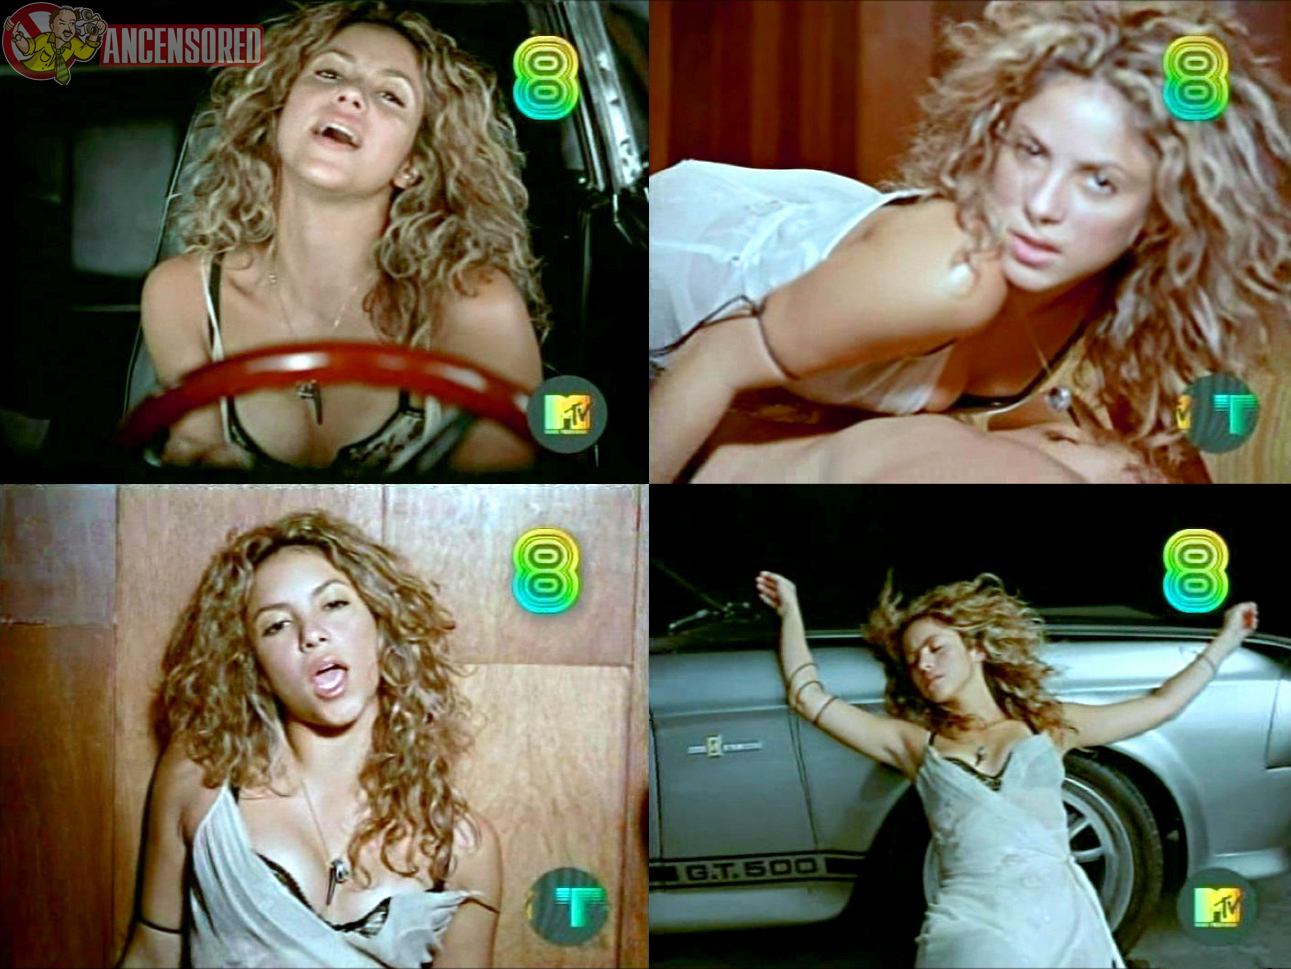 Shakira 